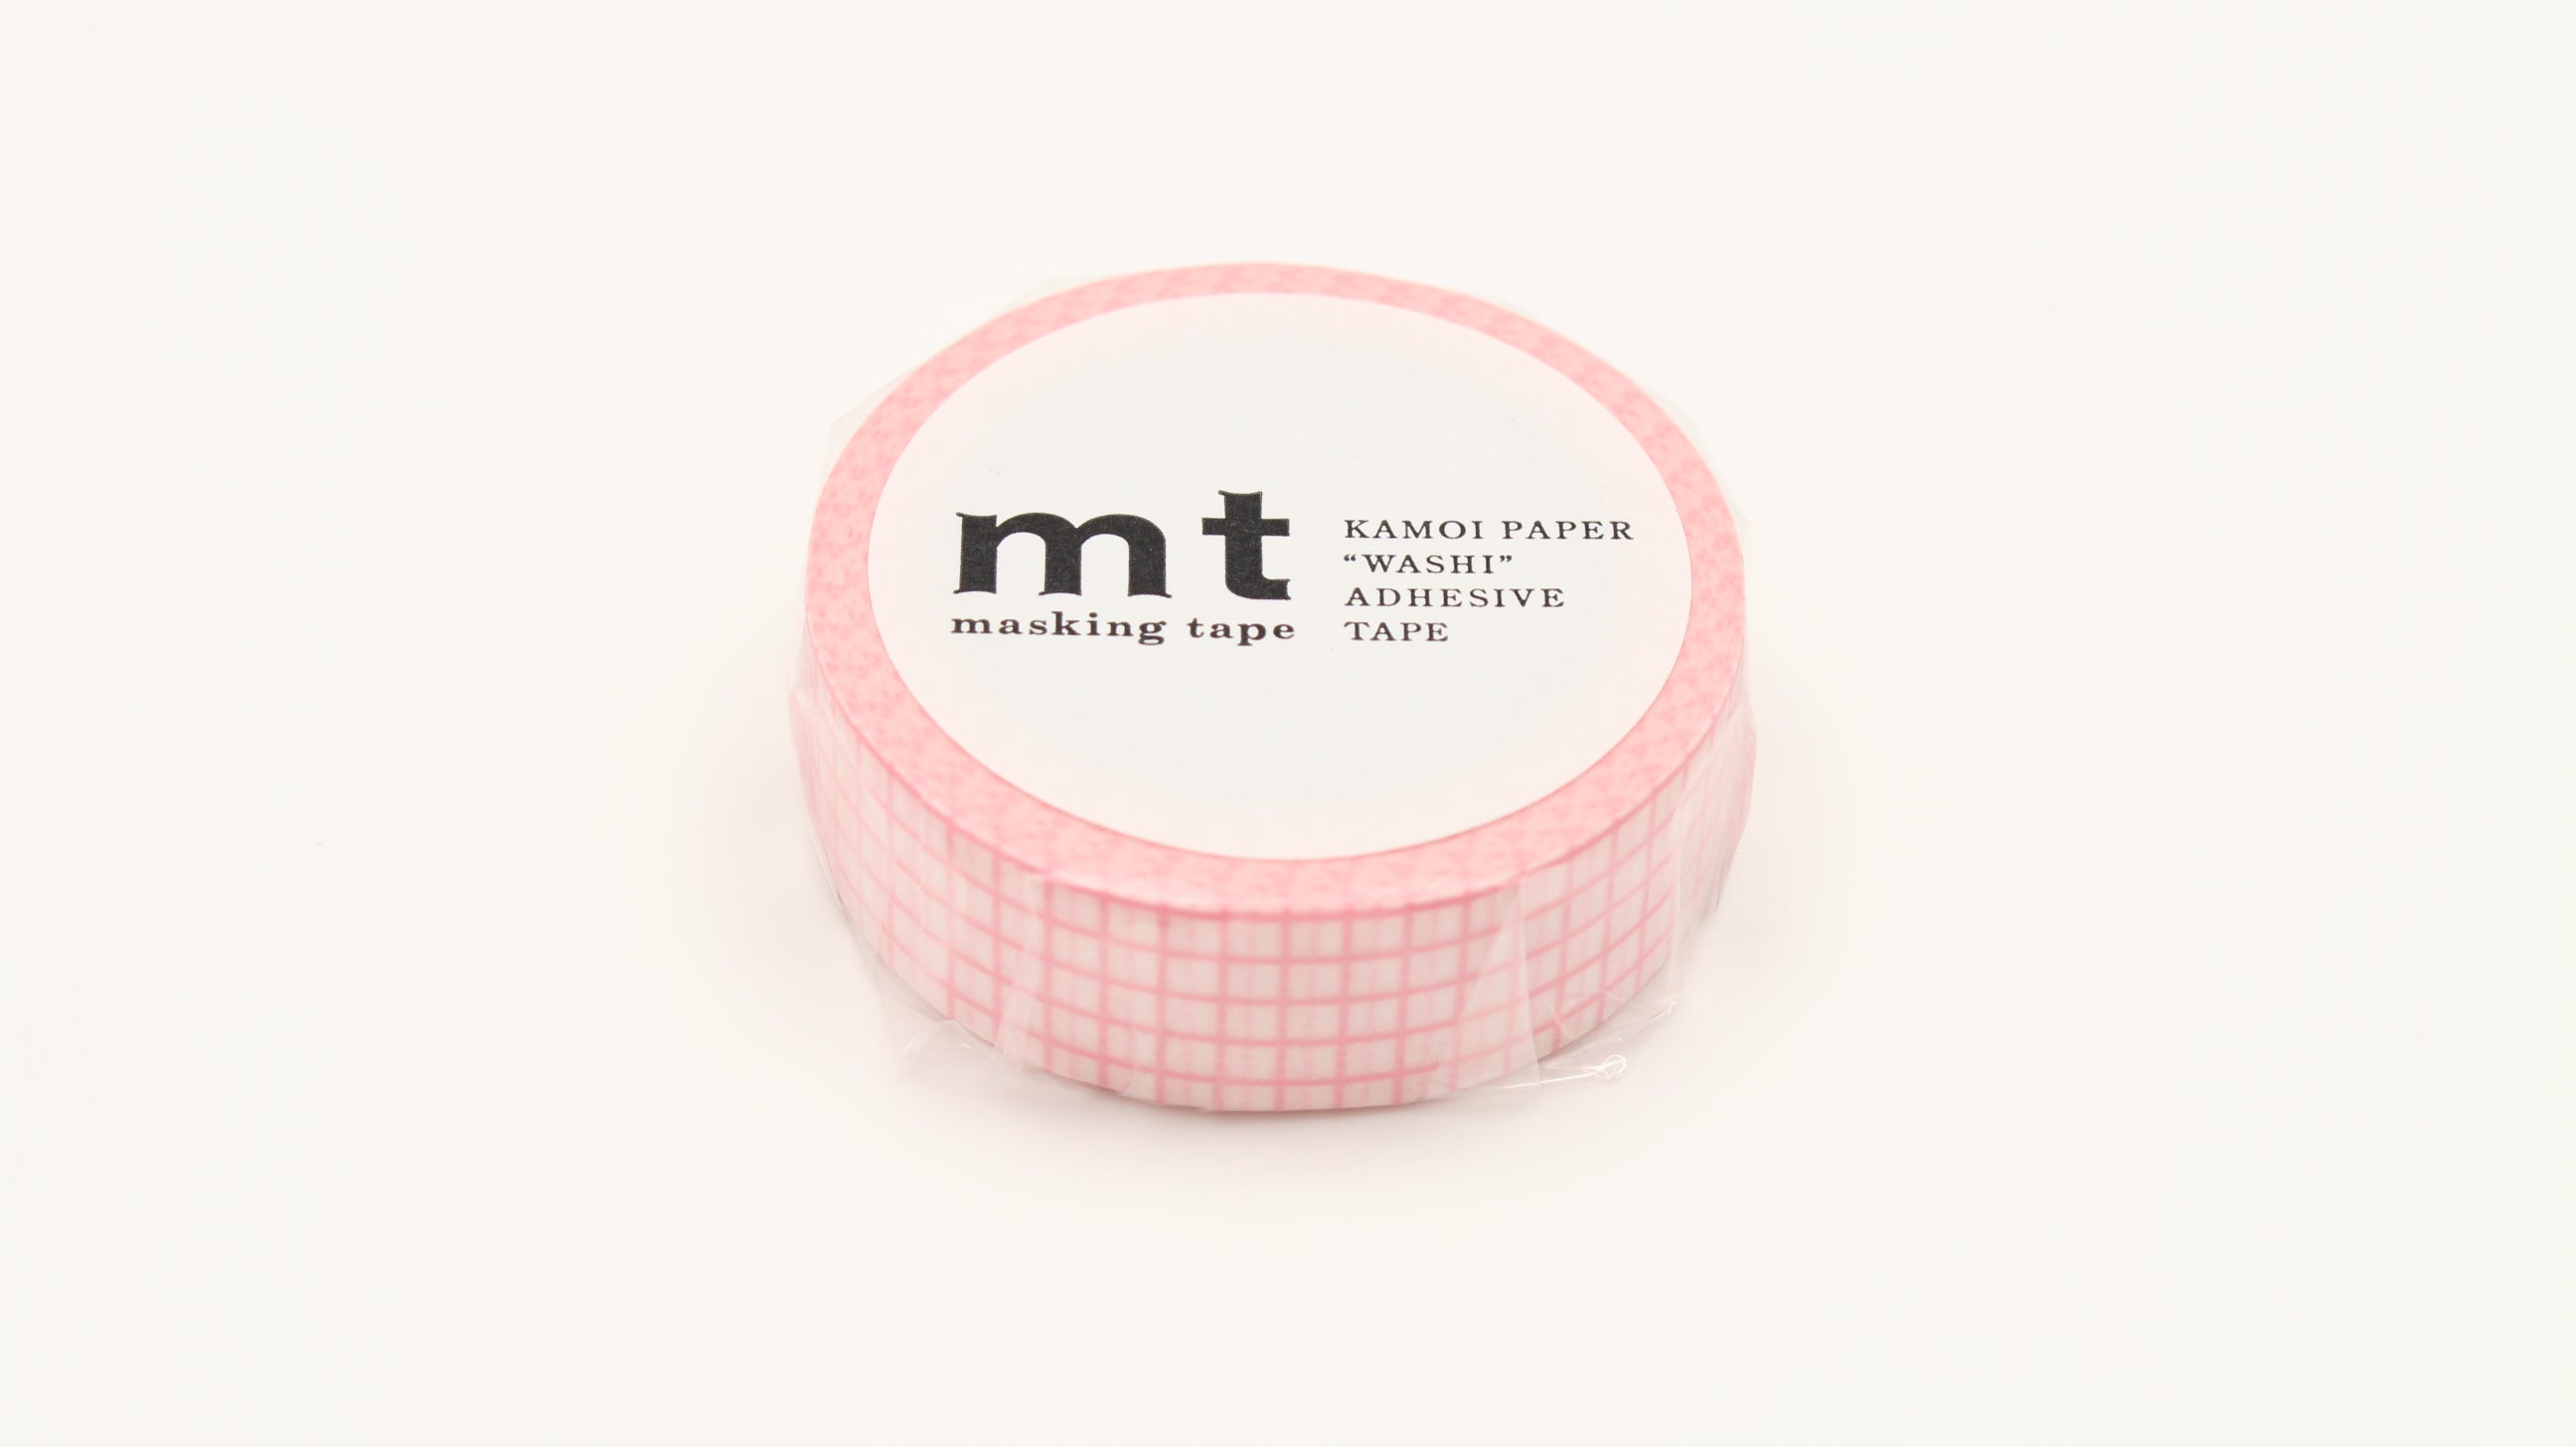 MT Masking Tape - Hougan Sakura-Maskingtape-DutchMills